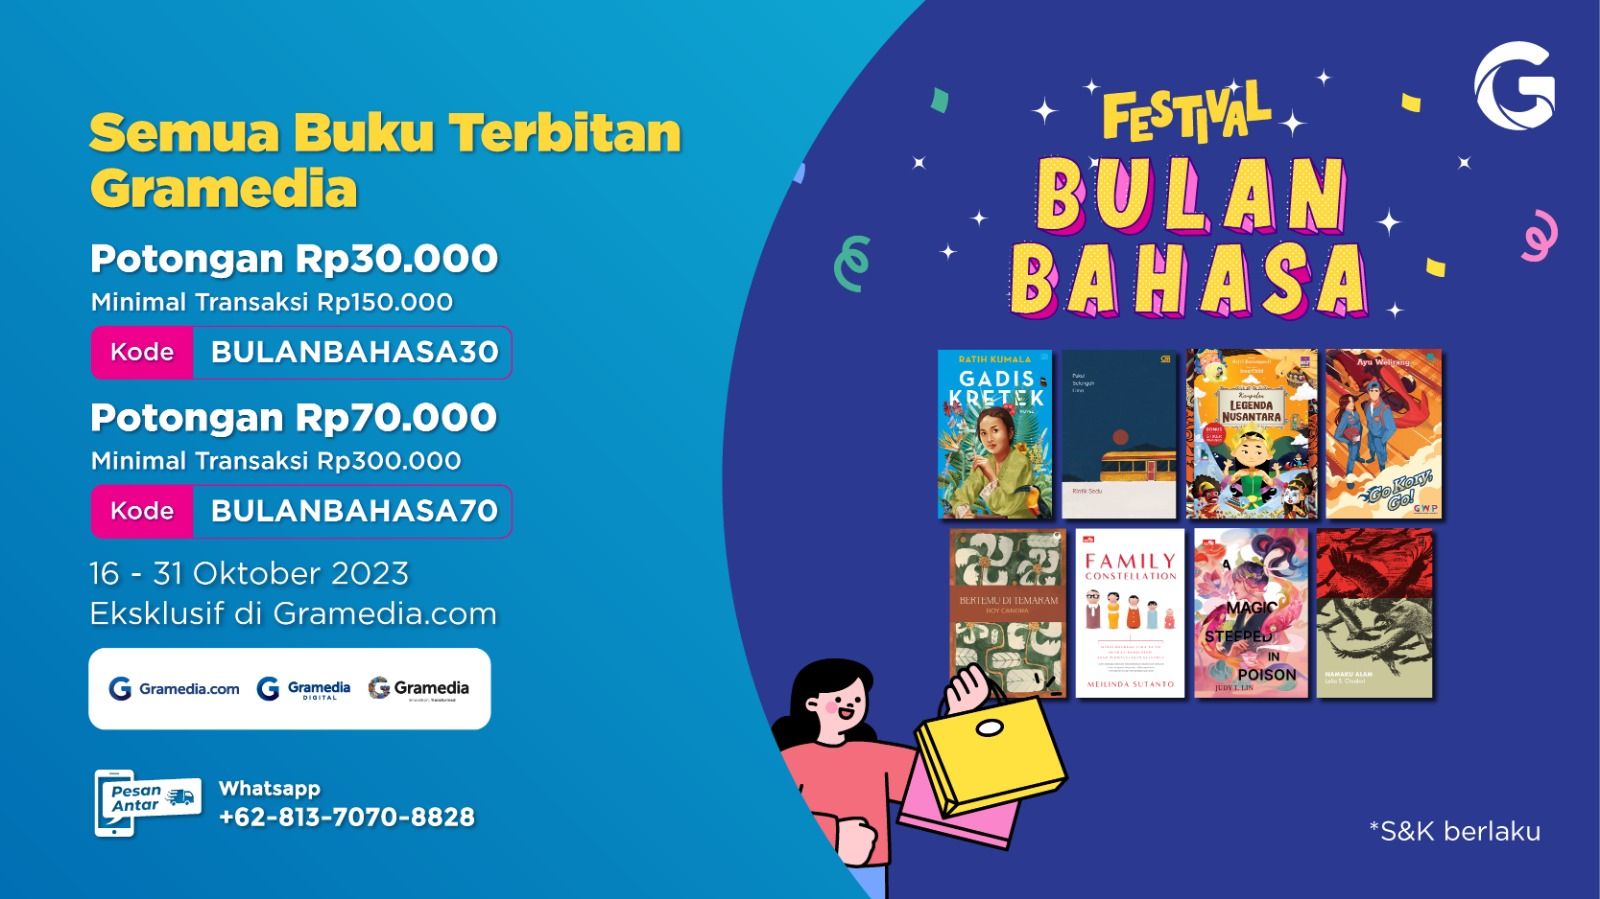 Festival Bulan Bahasa di Gramedia.com, Dapatkan Potongan Hingga 70 Ribu!